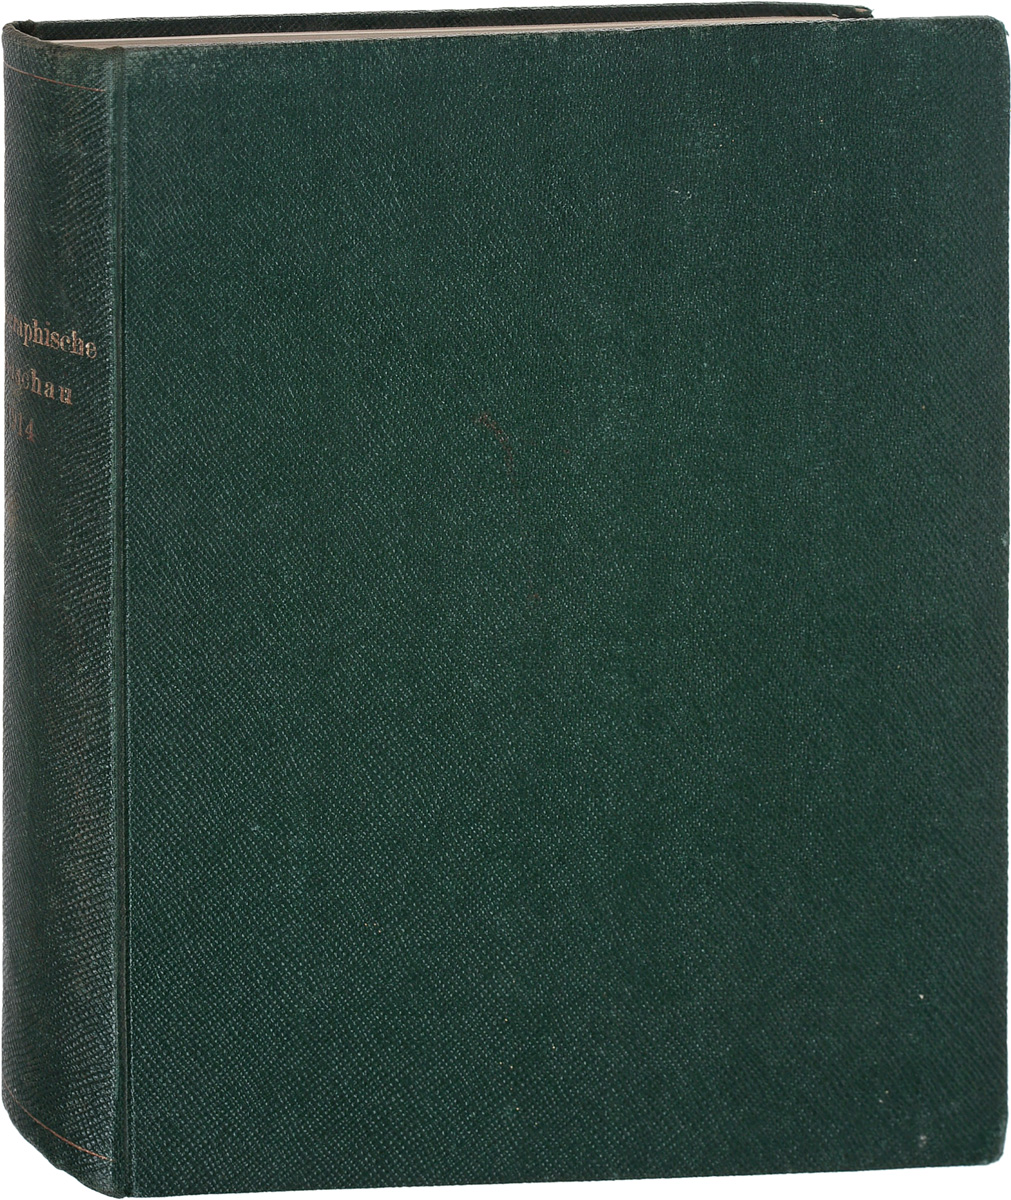 Photographische Rundschau und Mitteilungen, 51, 1914